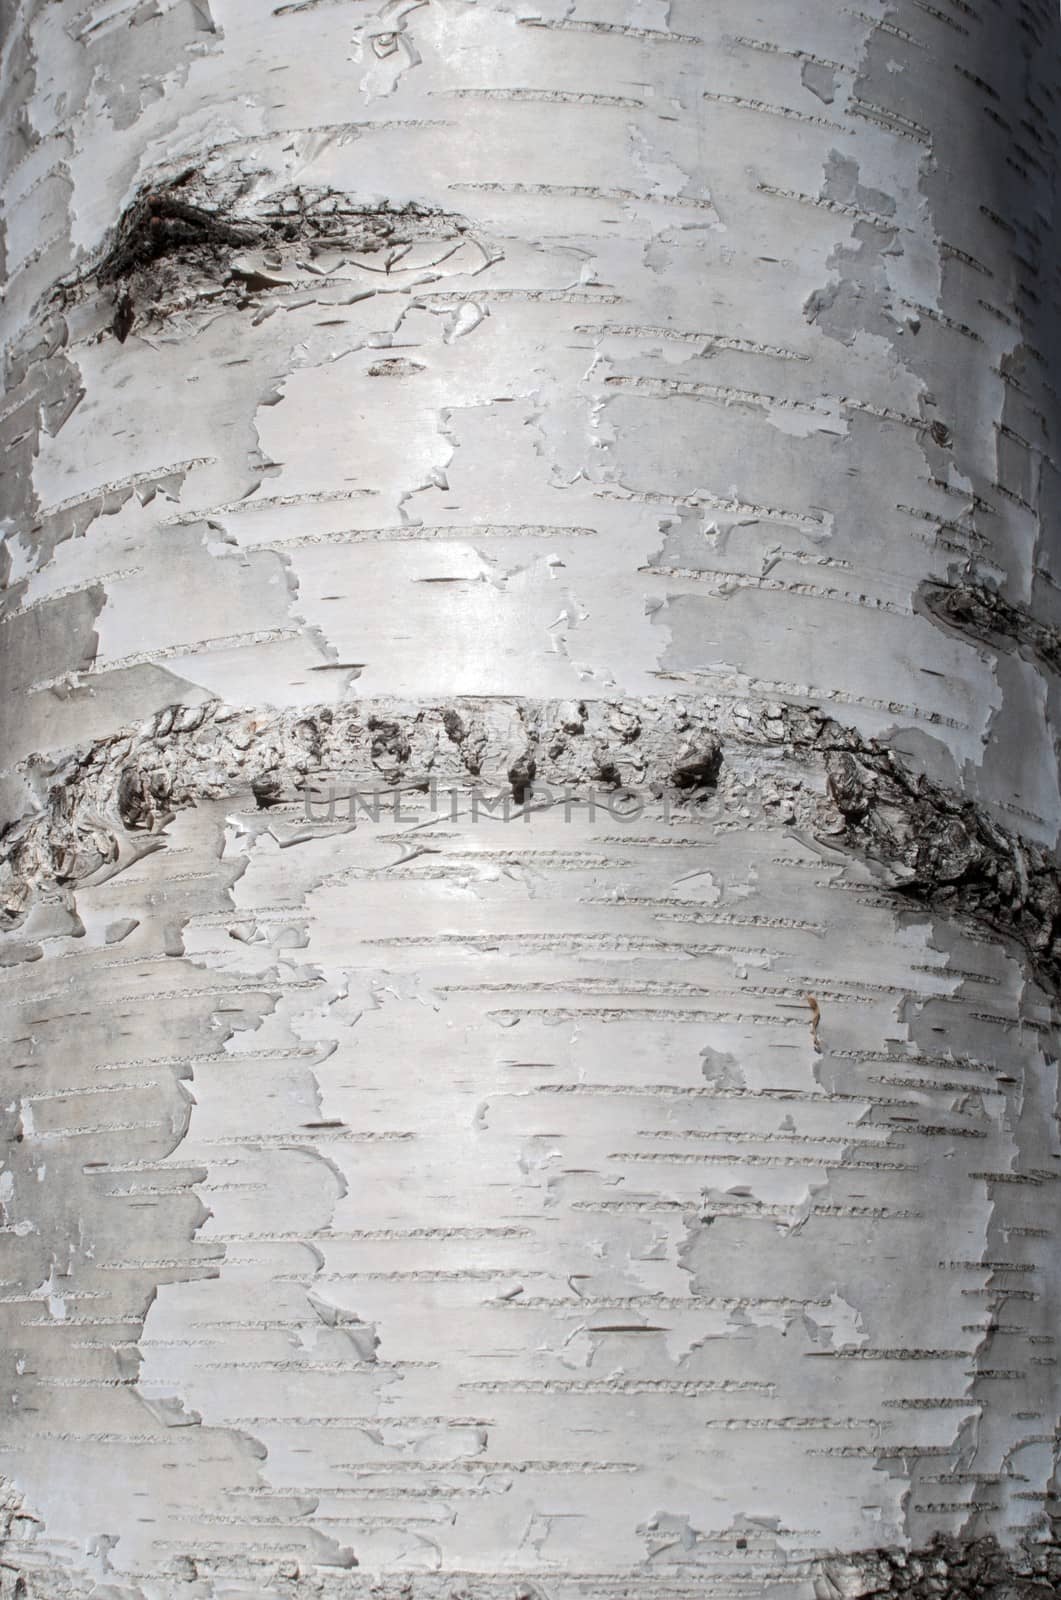 Texture of birch bark by mitakag